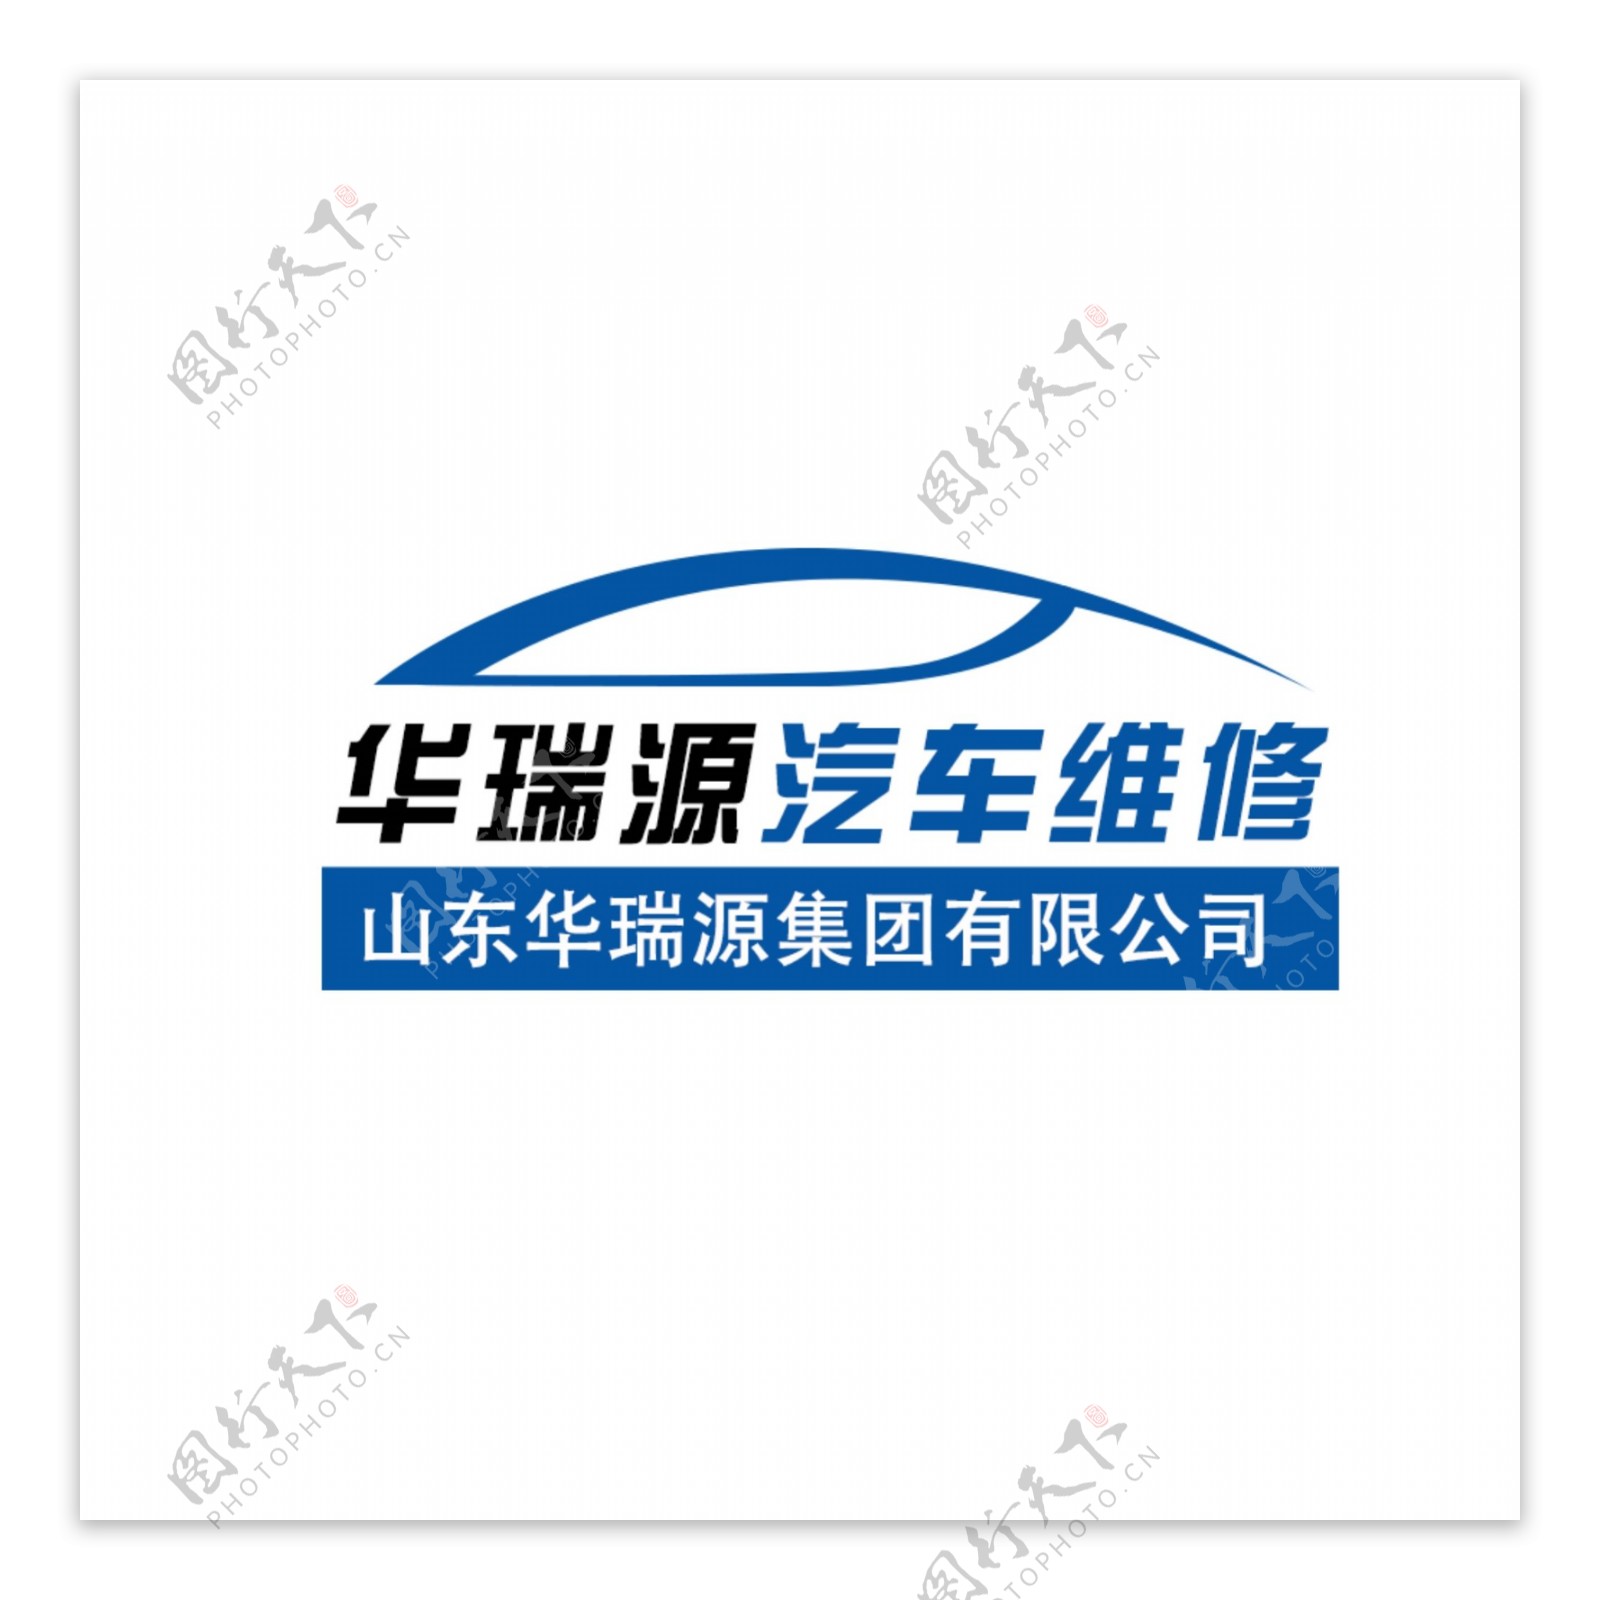 汽车维修厂原创logo高清PSD下载